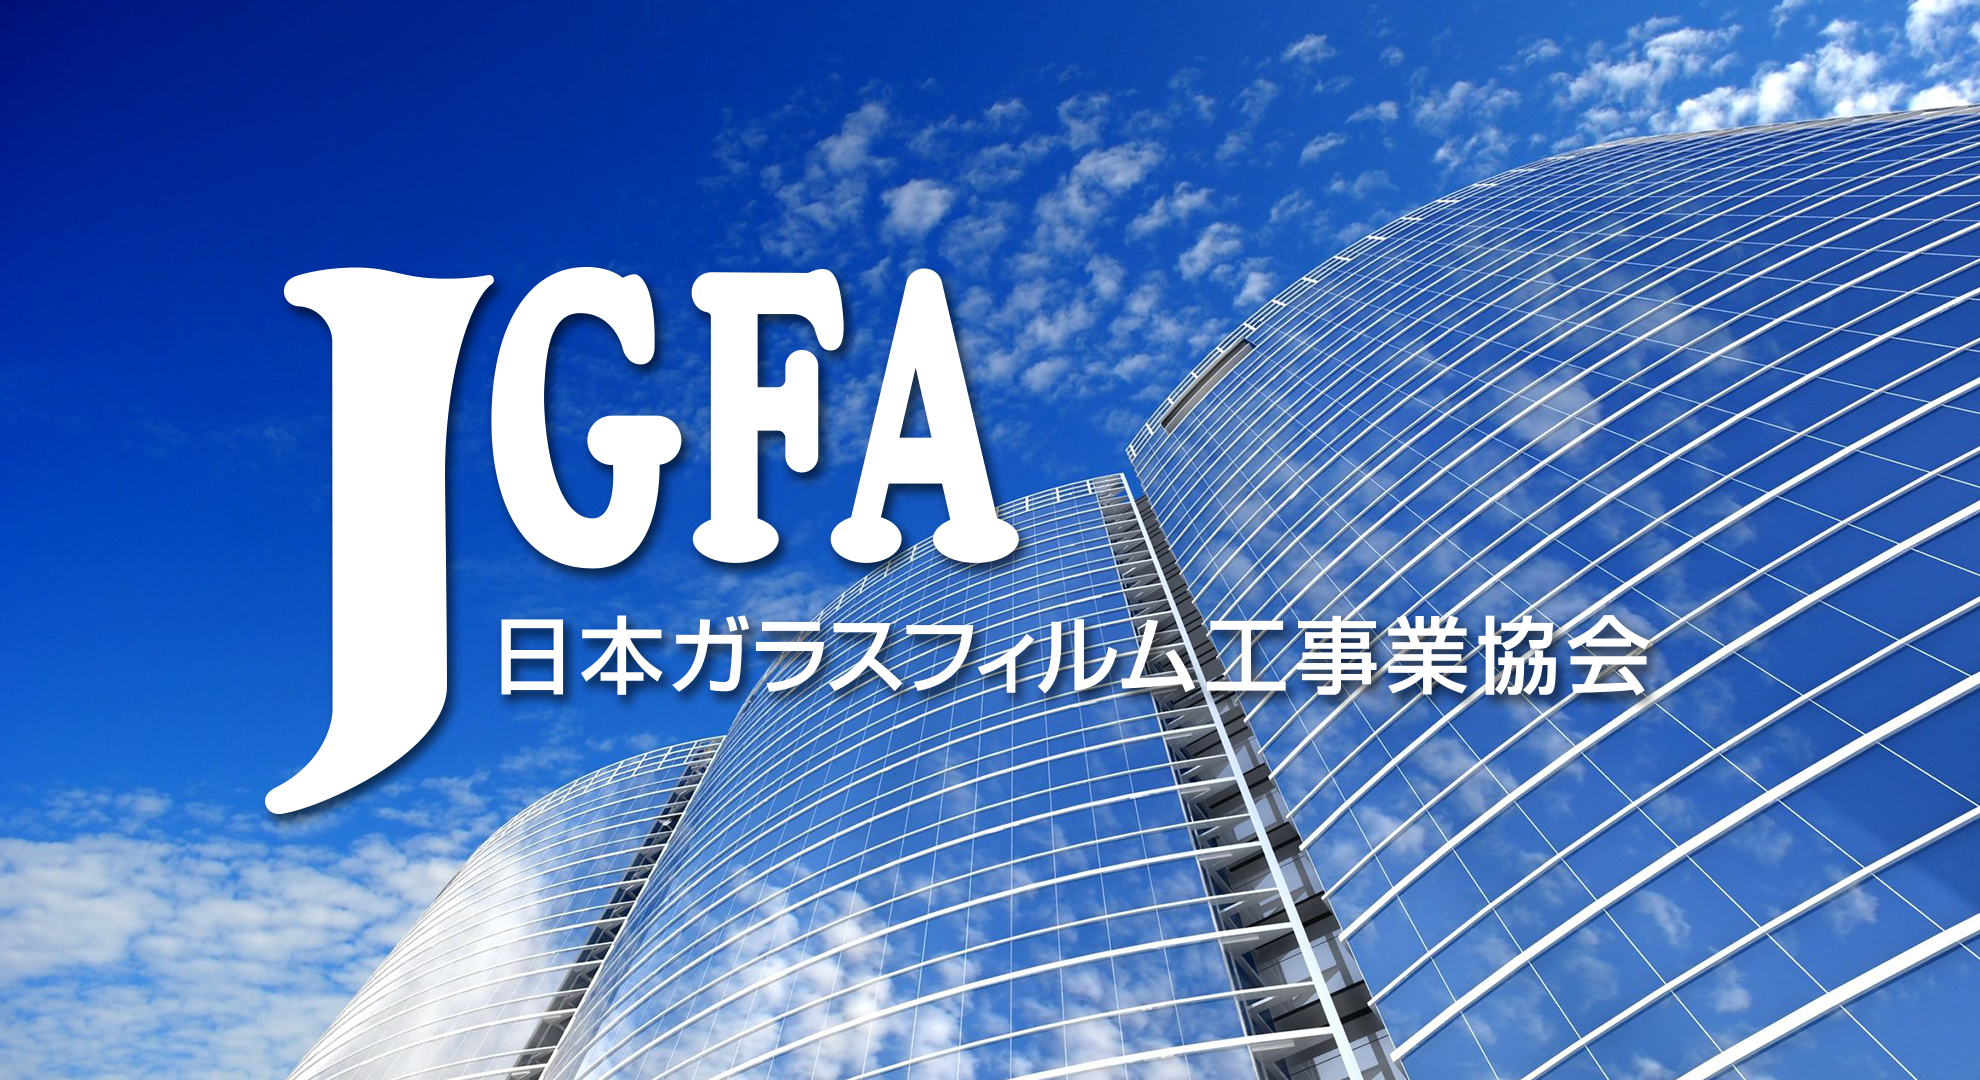 JGFA 日本ガラスフィルム工事業協会